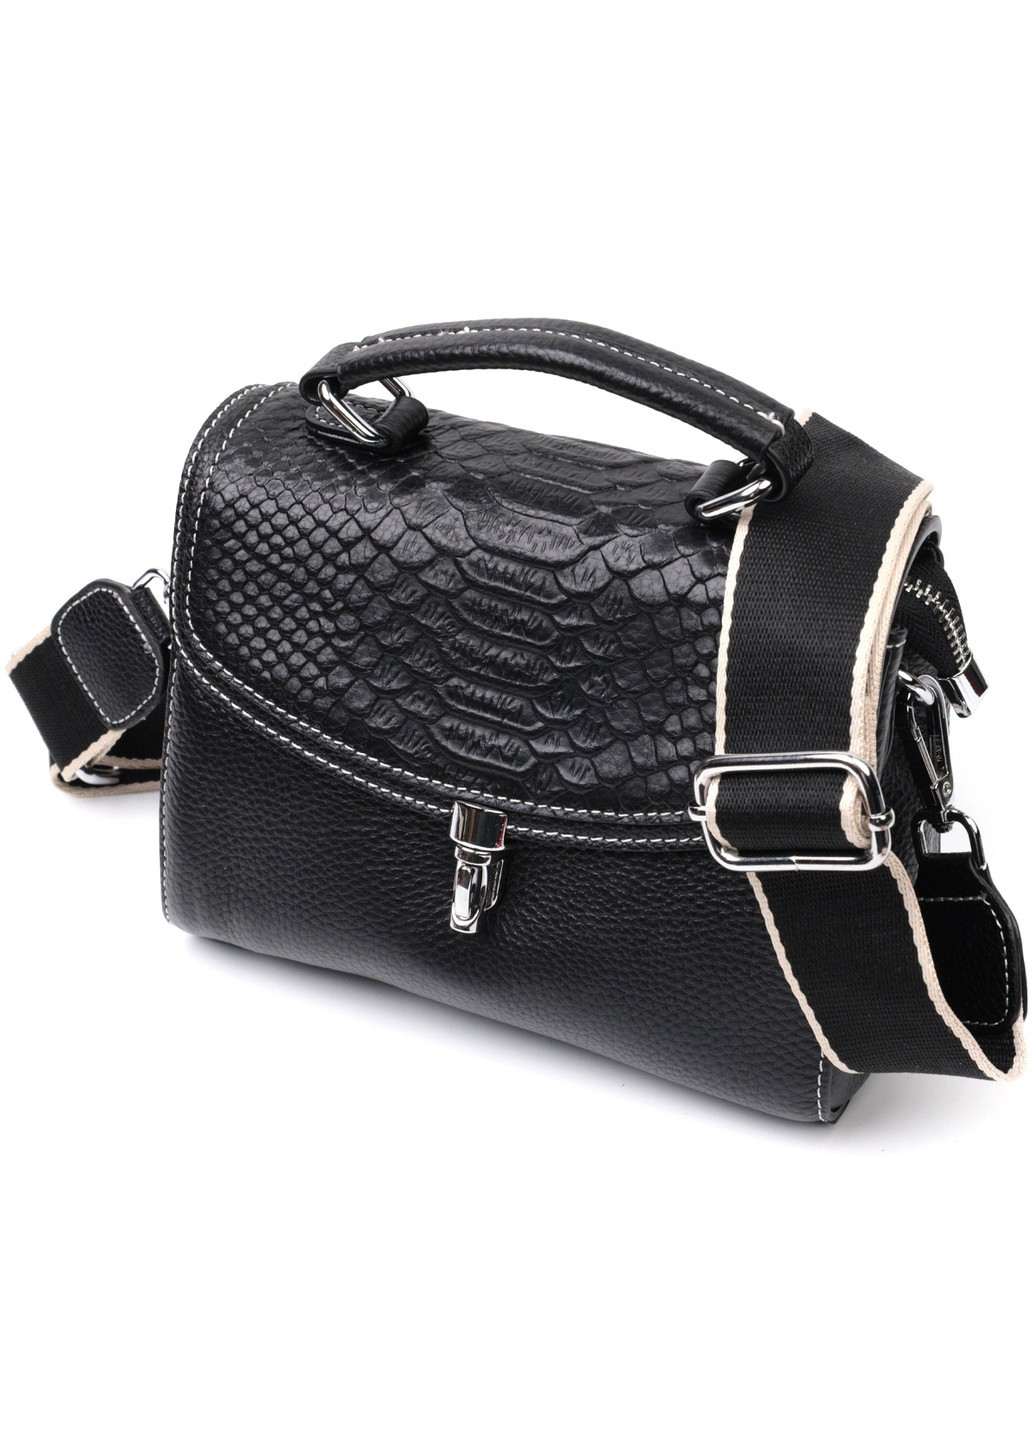 Шкіряна сумка для жінок з цікавою засувкою 22416 Чорний Vintage (276457608)